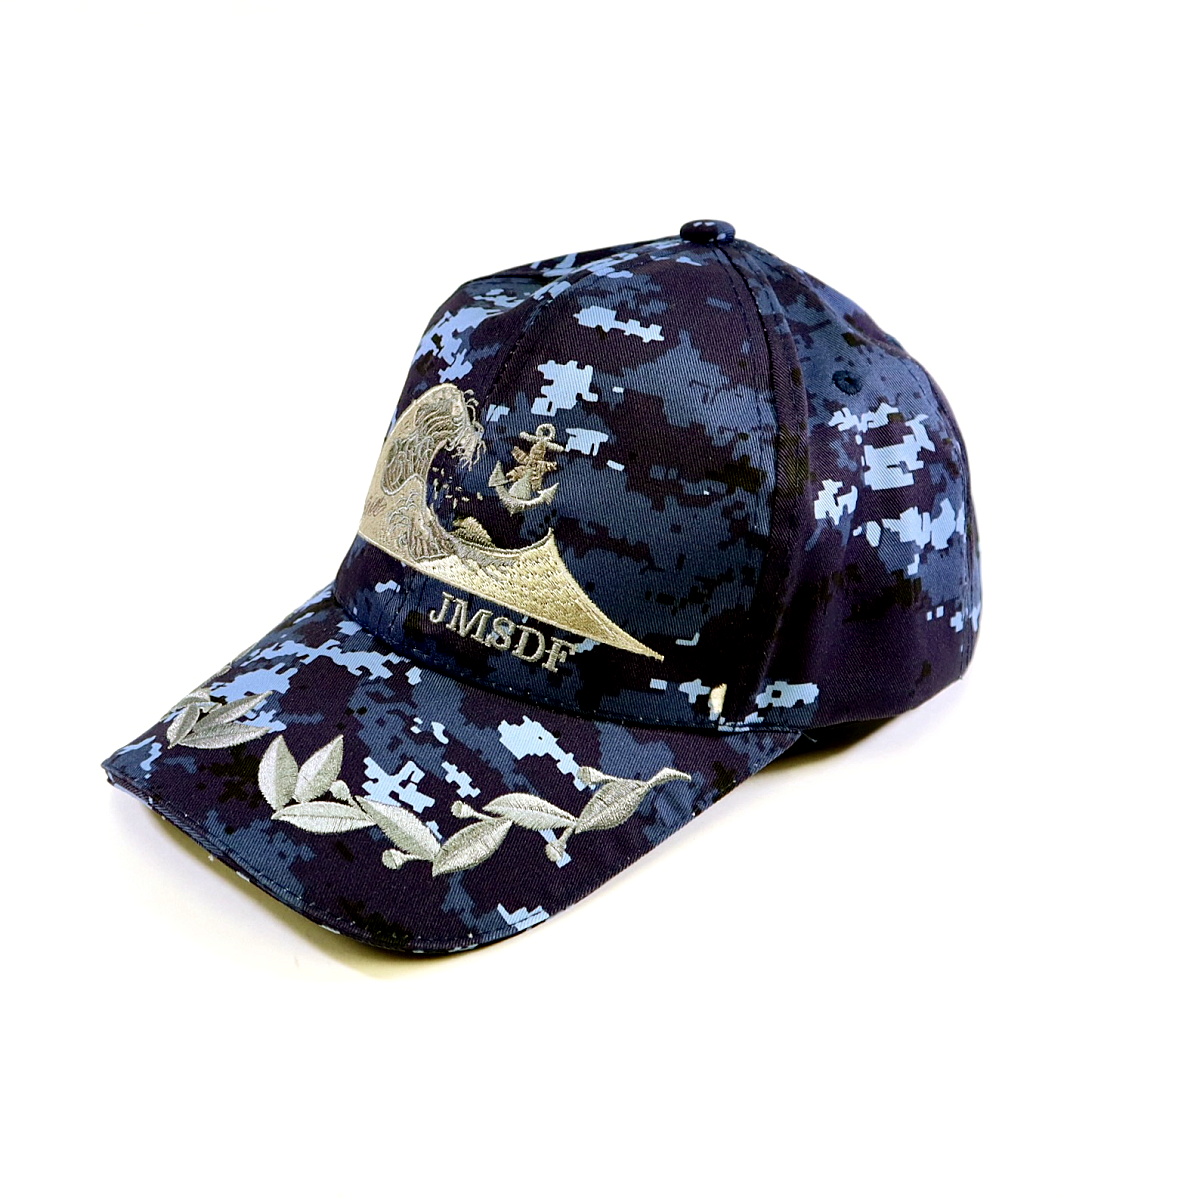 防衛大学校 佐官用 官品 帽子 キャップ商品の状態は画像の通りです